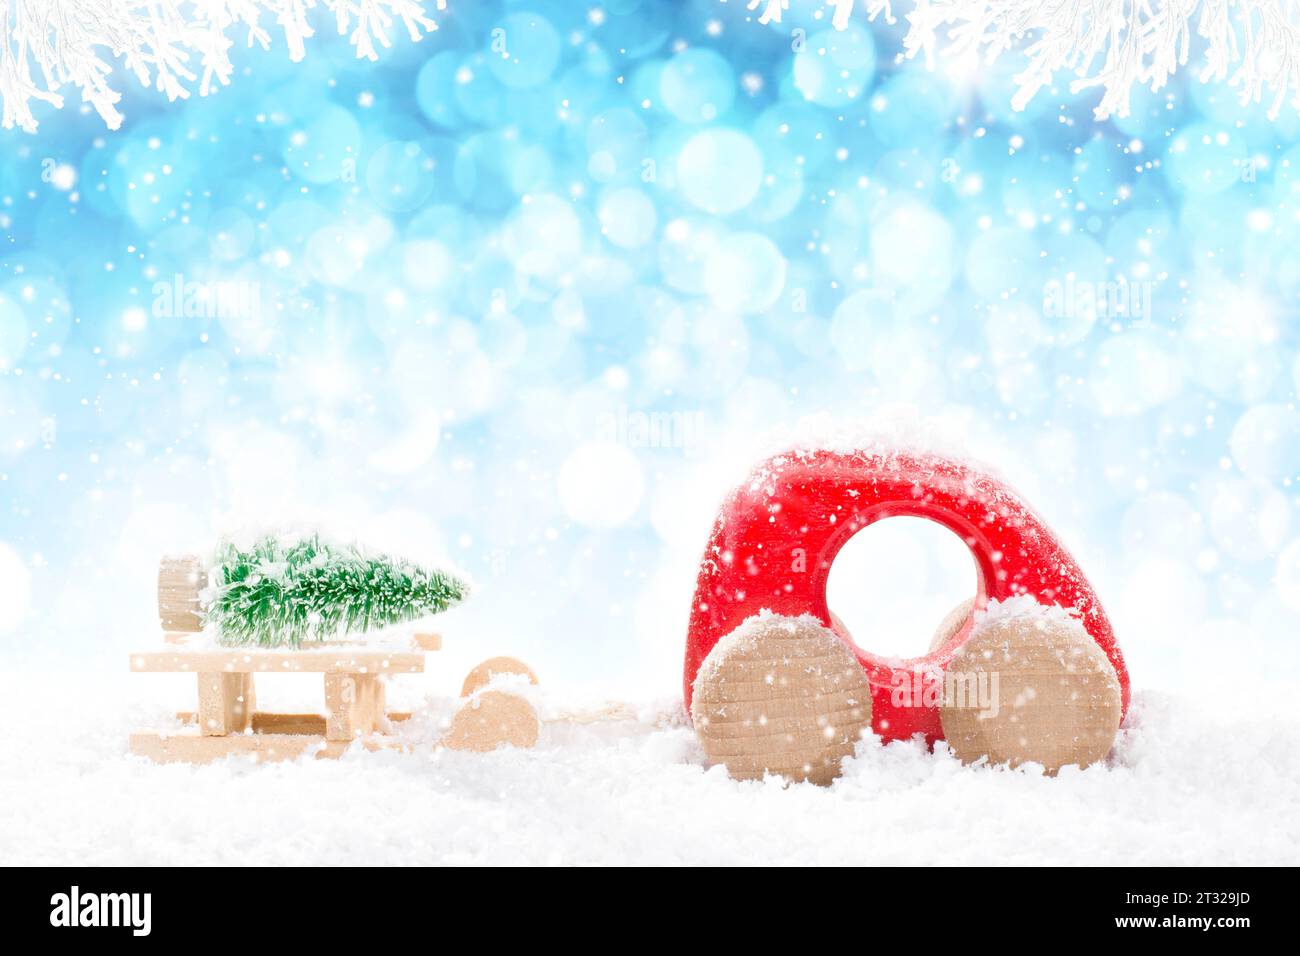 Rotes hölzernes Auto, das Schlitten mit grünem Weihnachtsbaum in der Perspektive auf hellblauem Bokeh-Winterhintergrund mit weißen schneebedeckten Zweigen und fallendem Schnee zieht Stockfoto